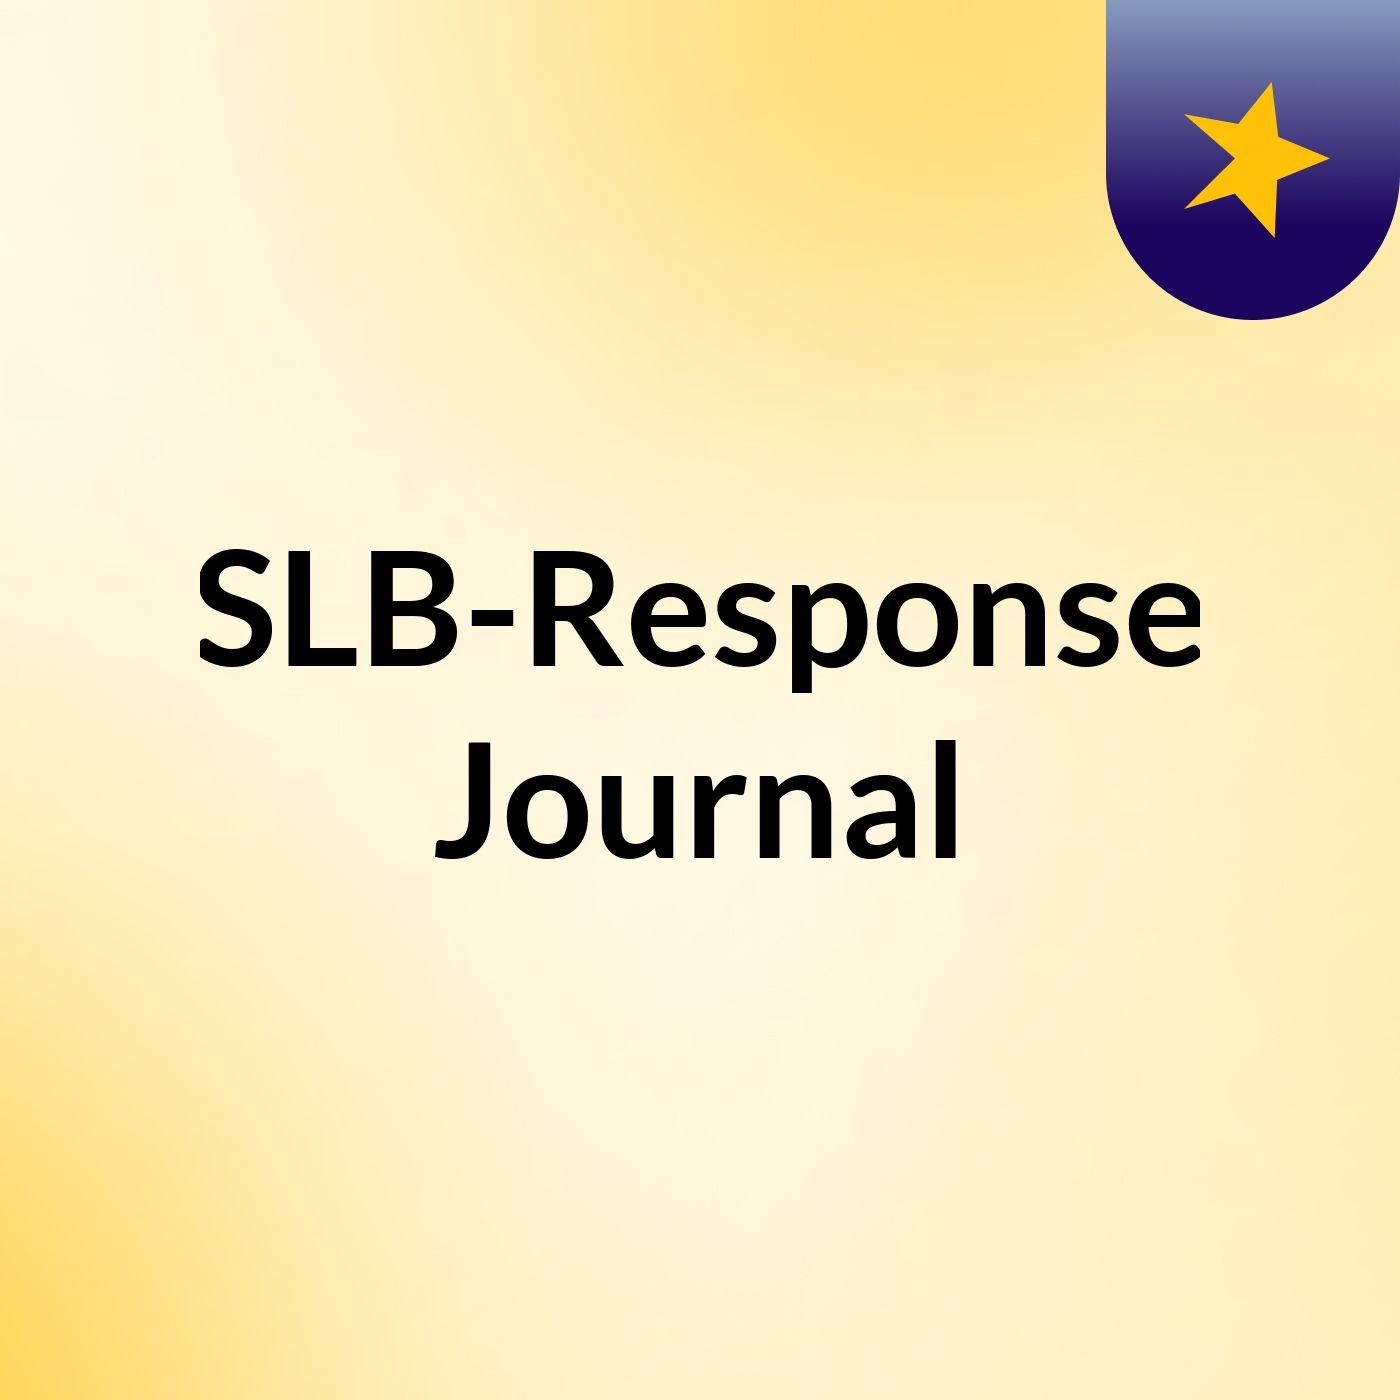 Episode 5 - SLB-Response Journal